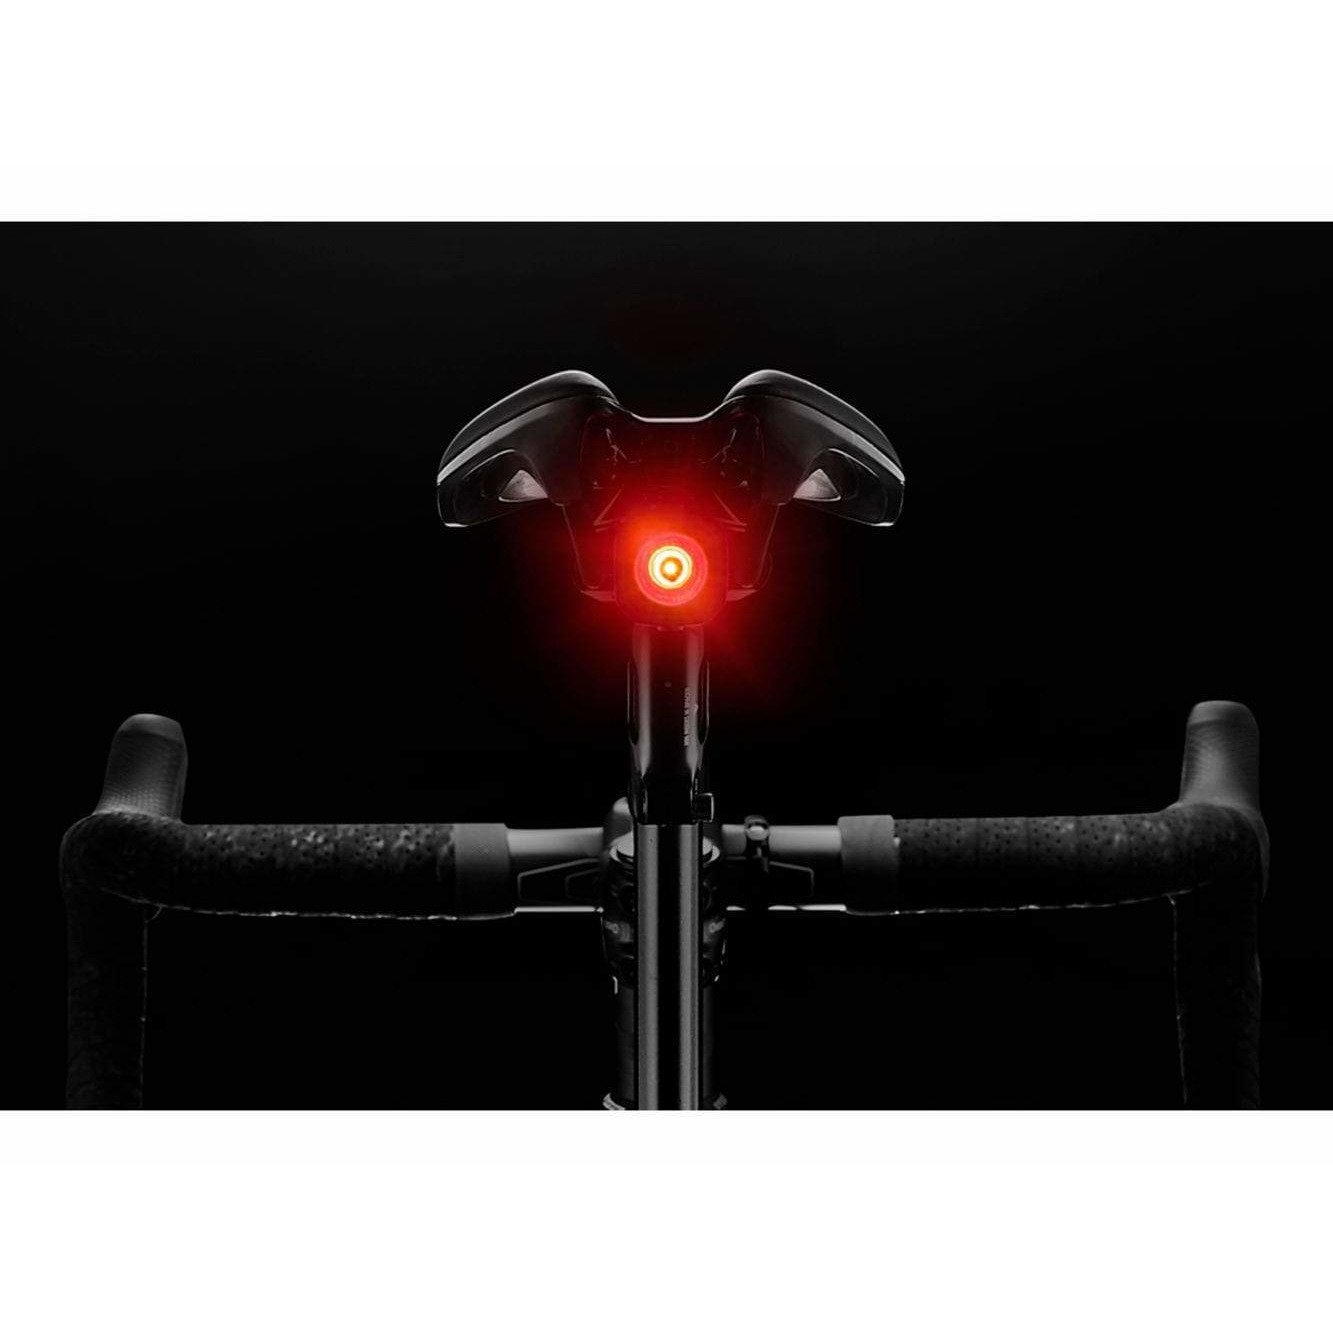 Giant Recon TL 100 Rear Bike Light